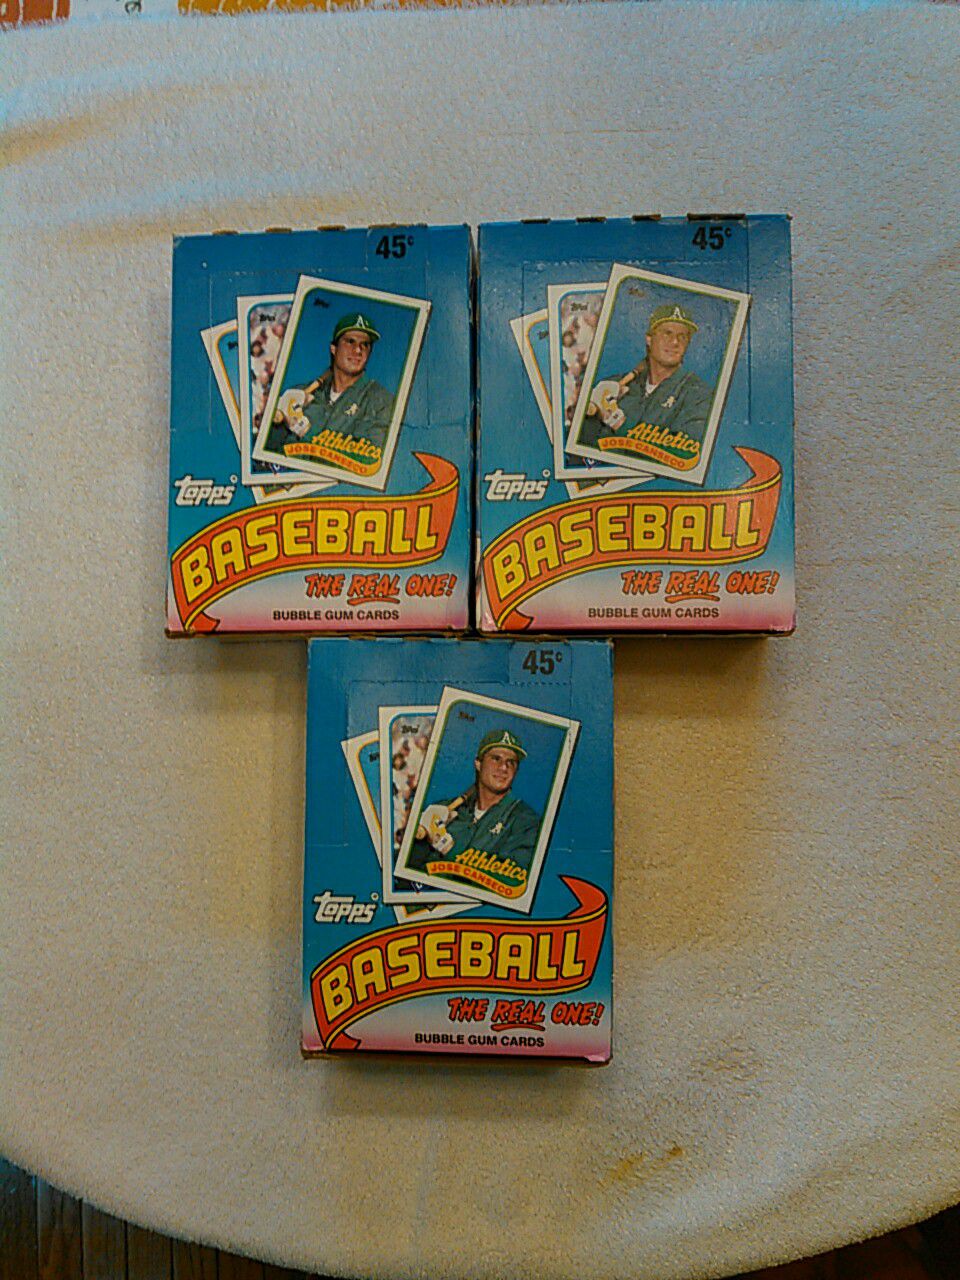 1989 Topps baseball bubble baseball cards